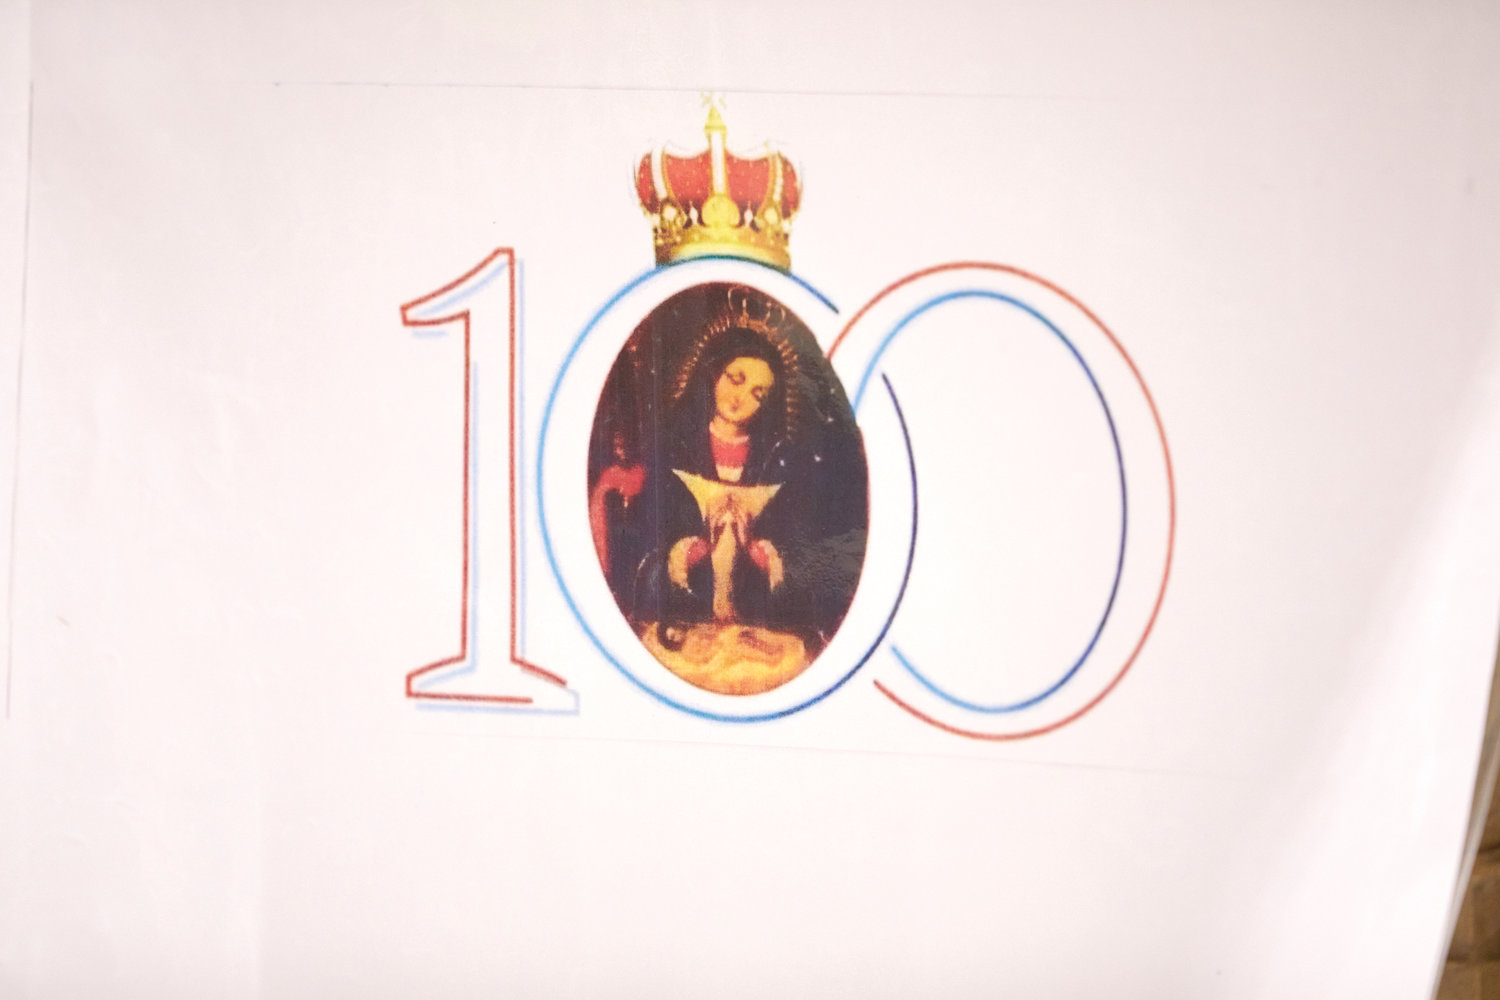 Imágenes de Nuestra Señora de la Altagracia, patrona de la República Dominicana, con el número 100 conmemoran el siglo desde la coronación canónica del retrato histórico de María en una Escena de Navidad.